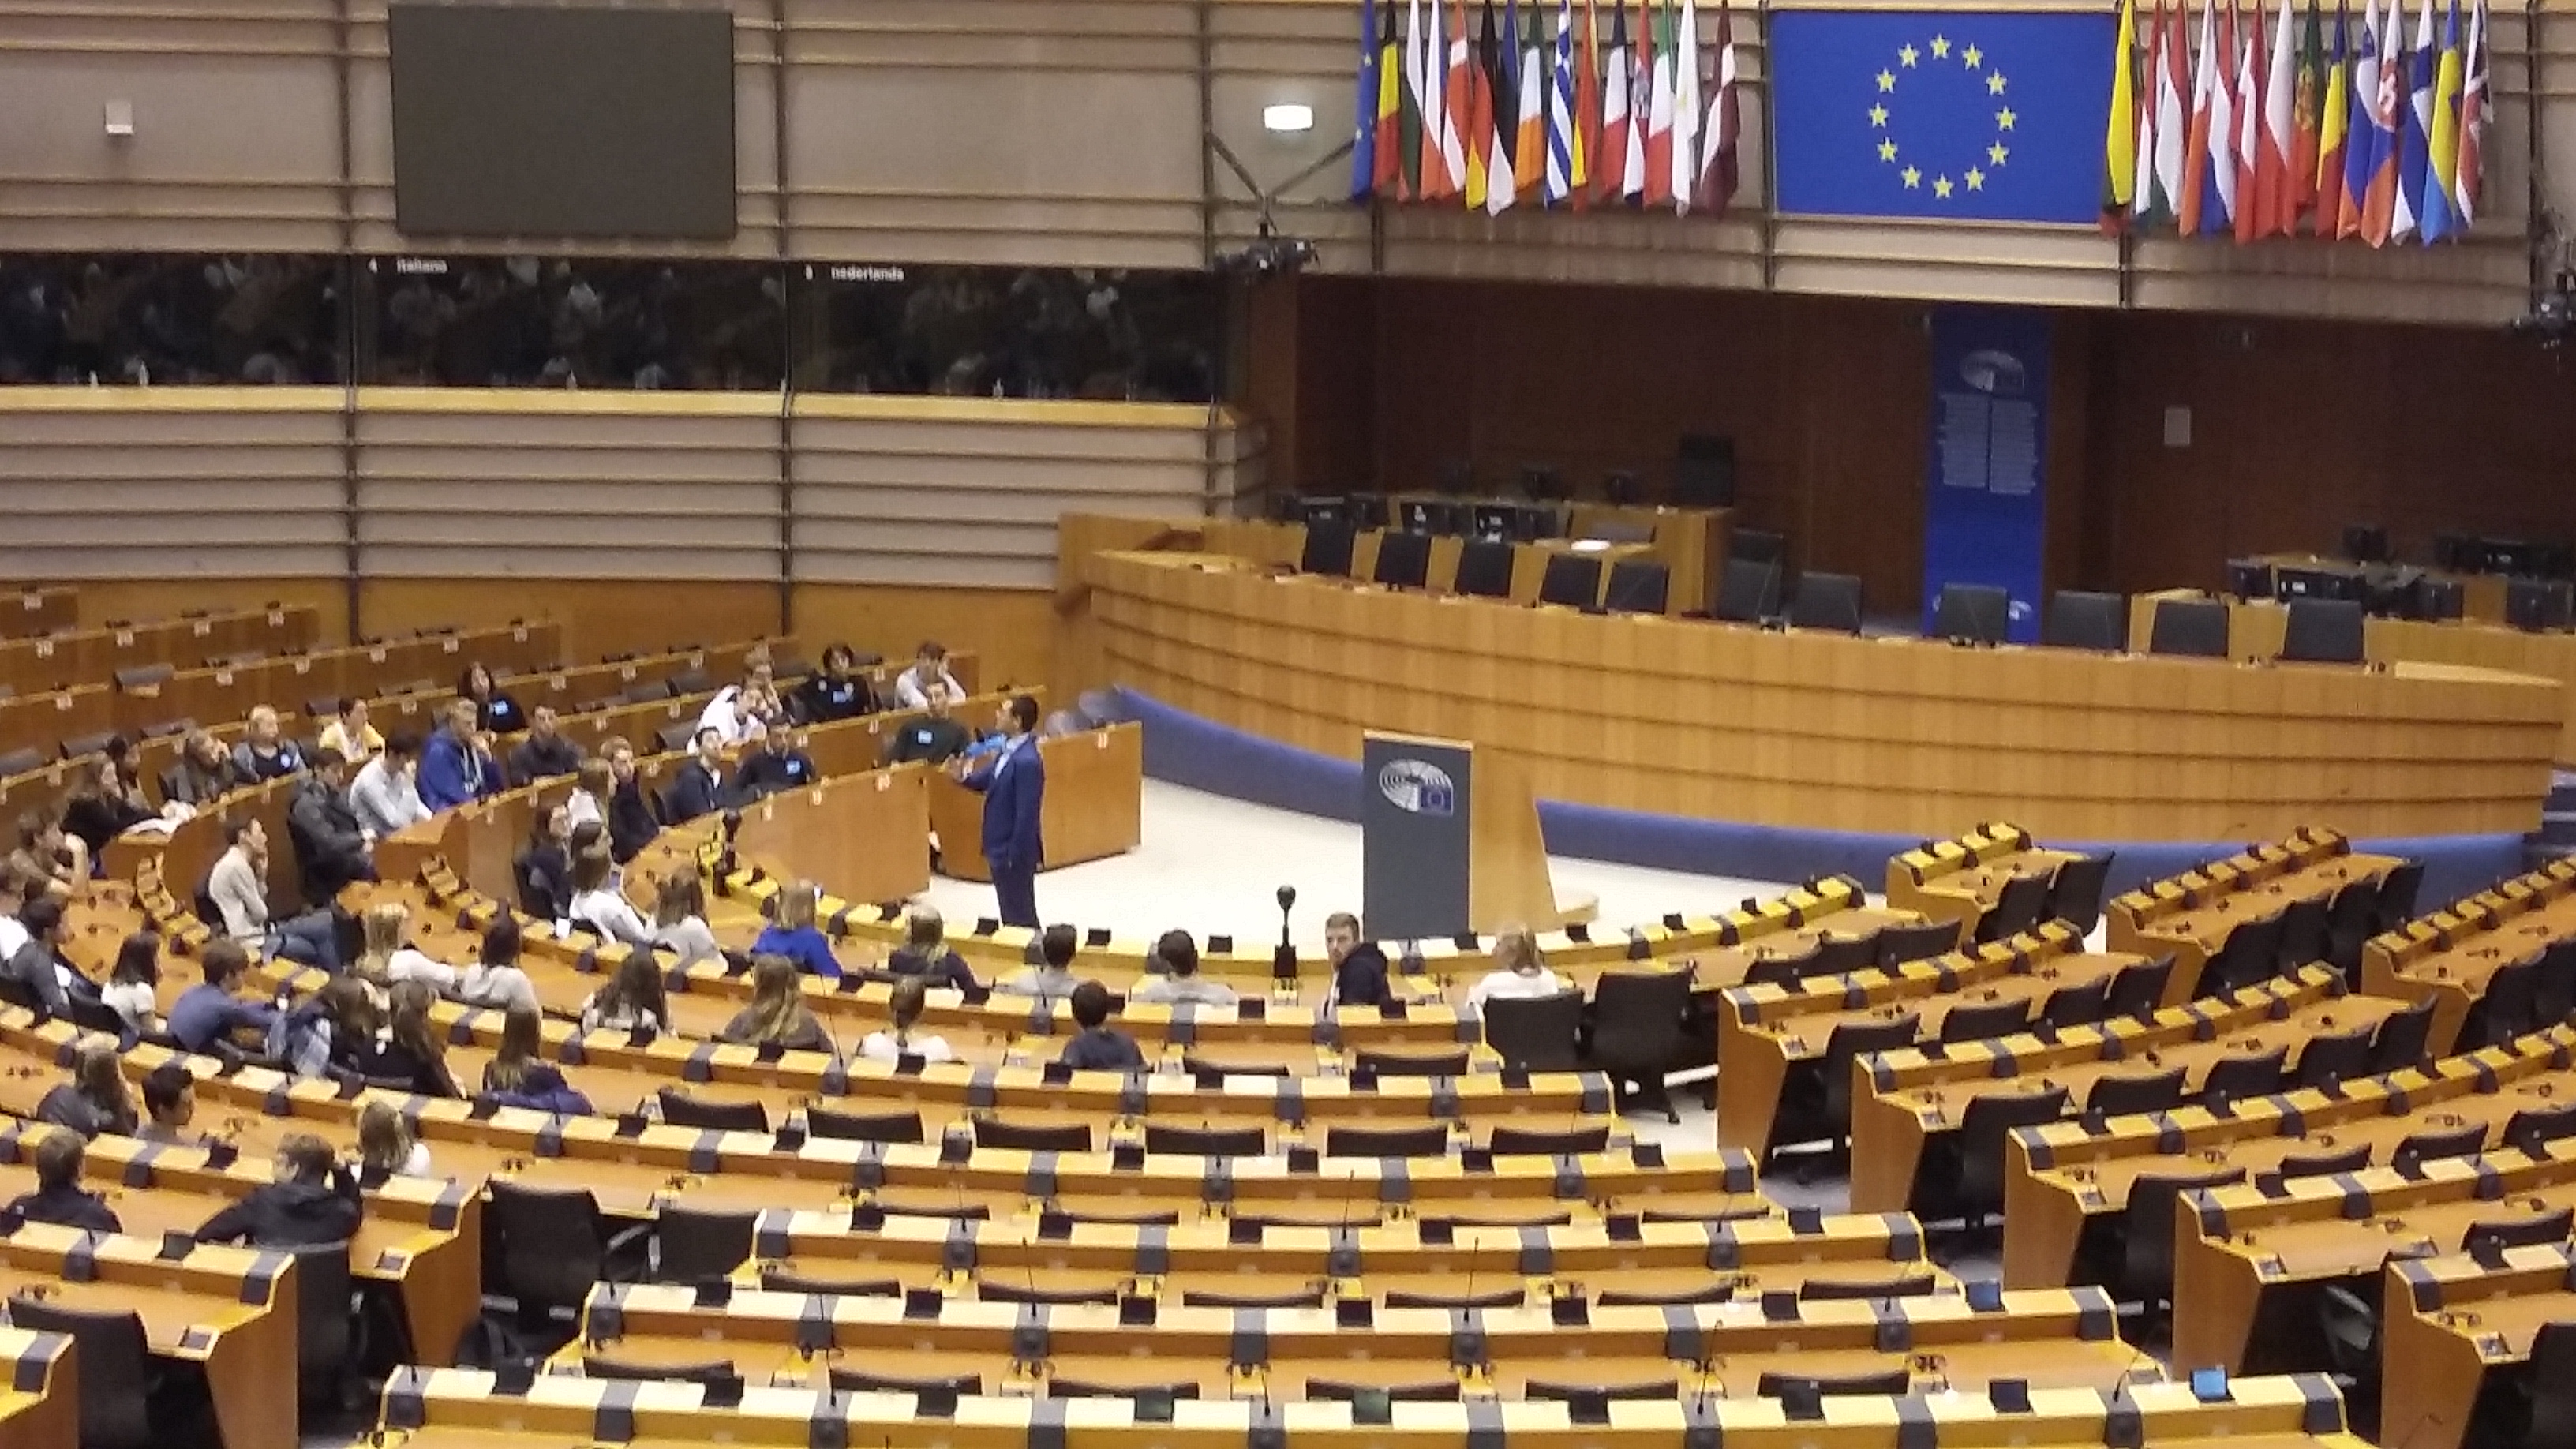 Jugendliche besuchen das Europäische Parlament in Brüssel